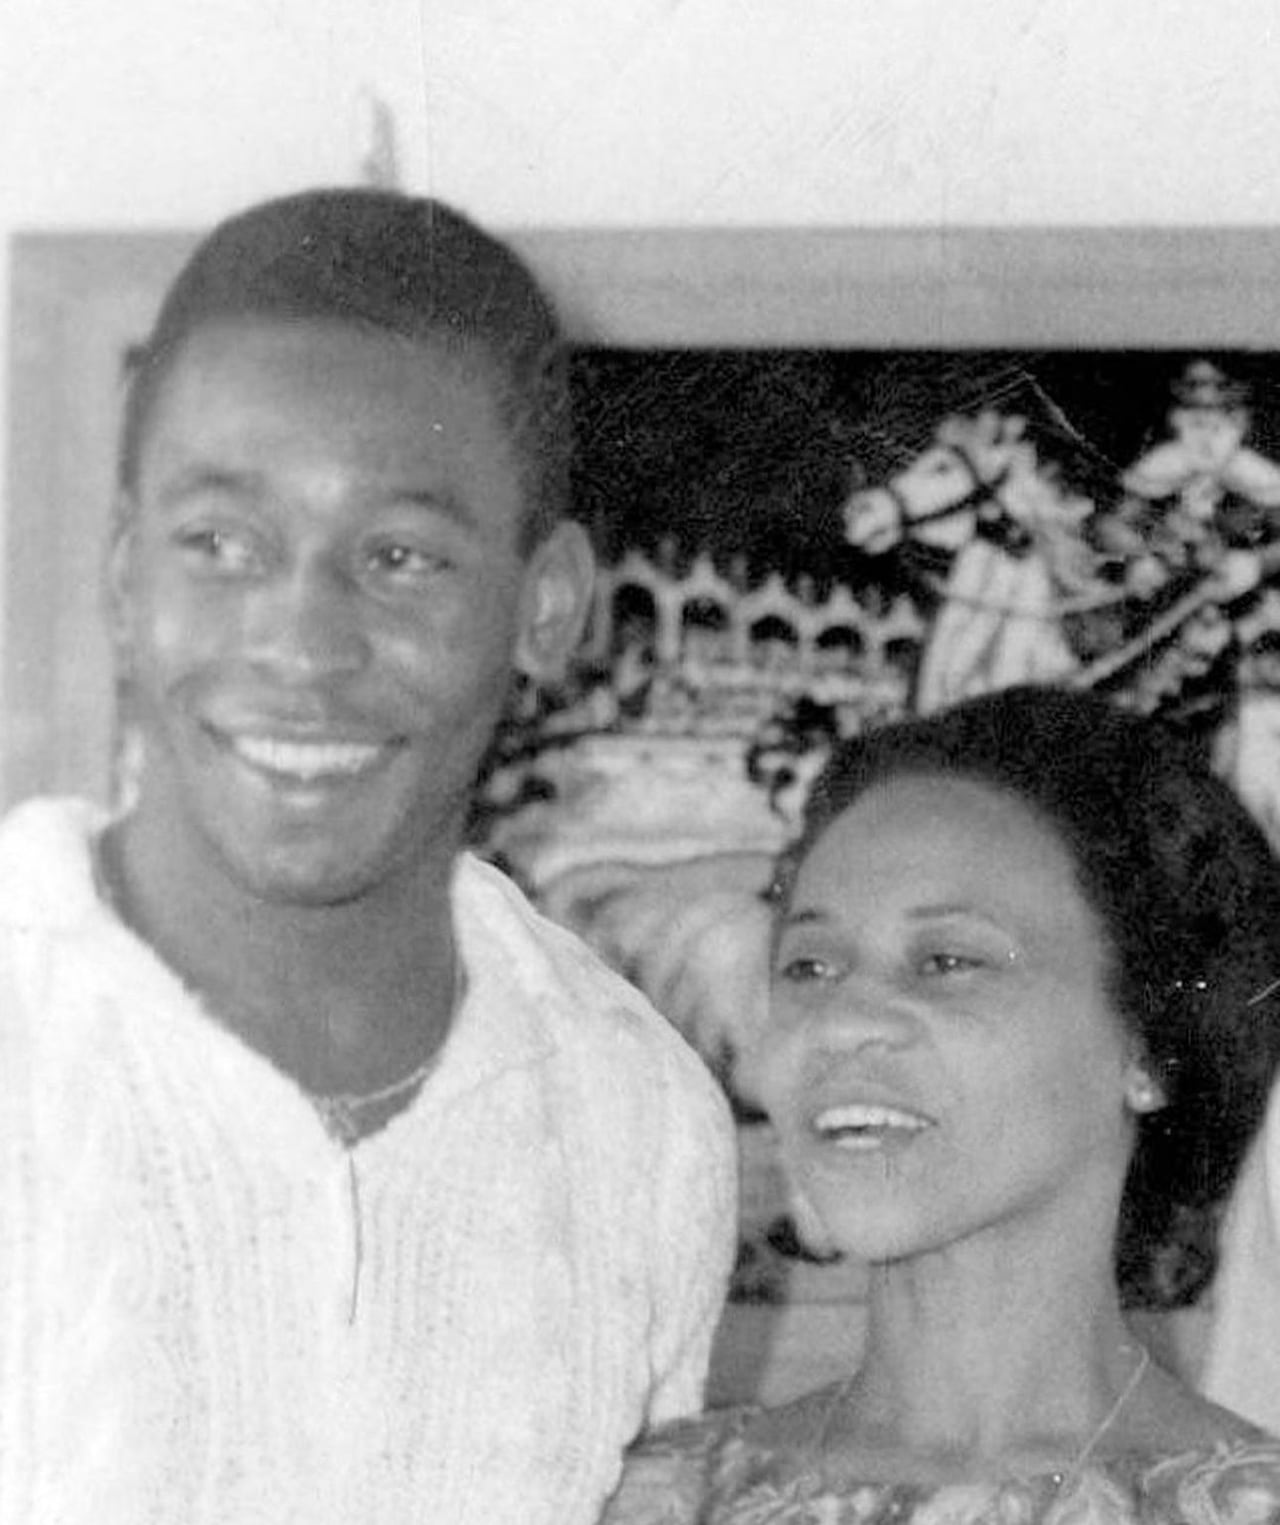 La cuenta oficial de Pele publicó varias imágenes del astro con su madre